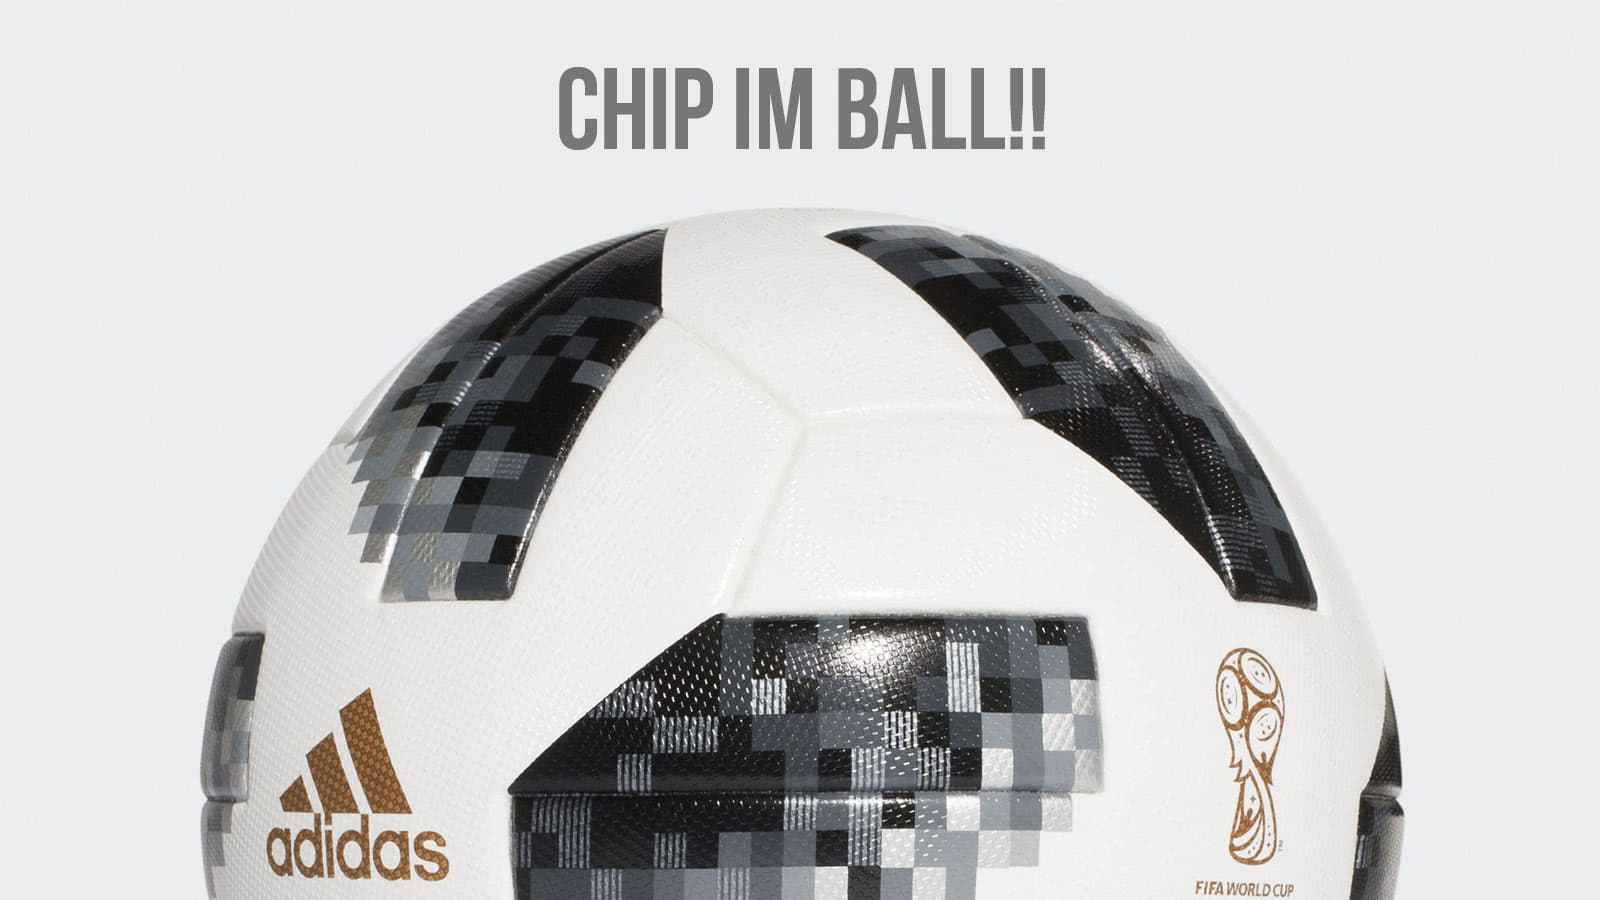 der adidas WM Ball mit Chip. Adidas Telstar 18 OMB incl NFC Chip